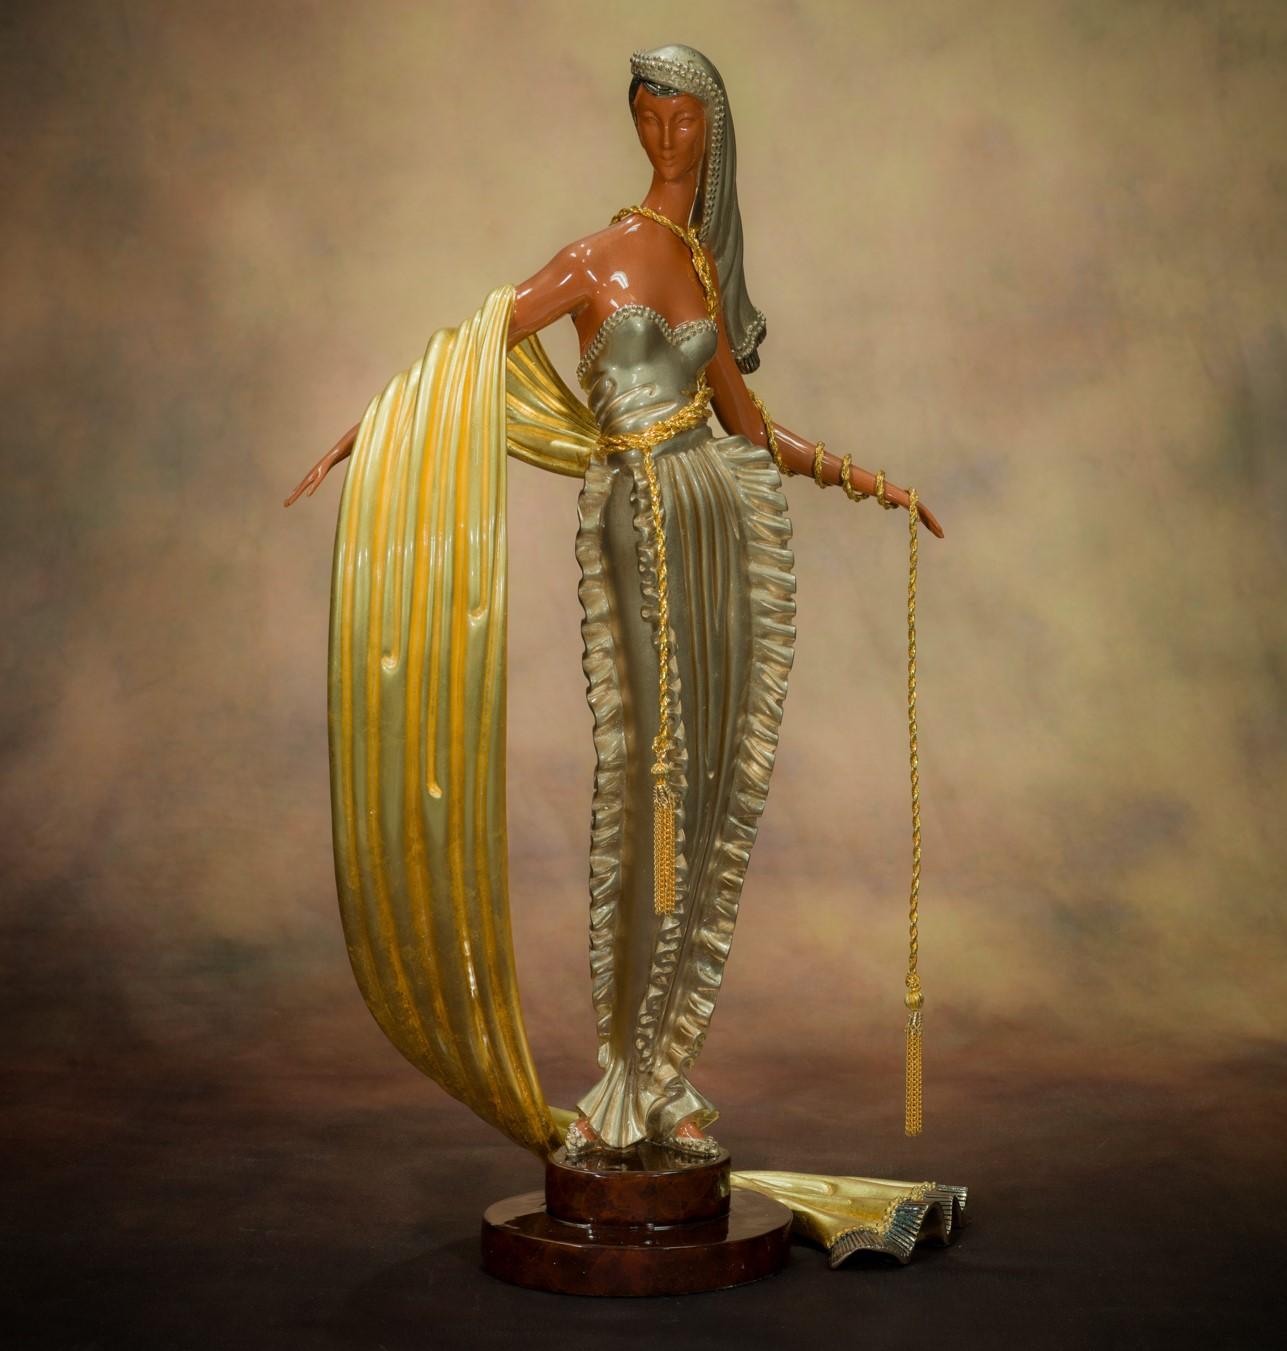 Erté Figurative Sculpture – Amerikanische Millionärin